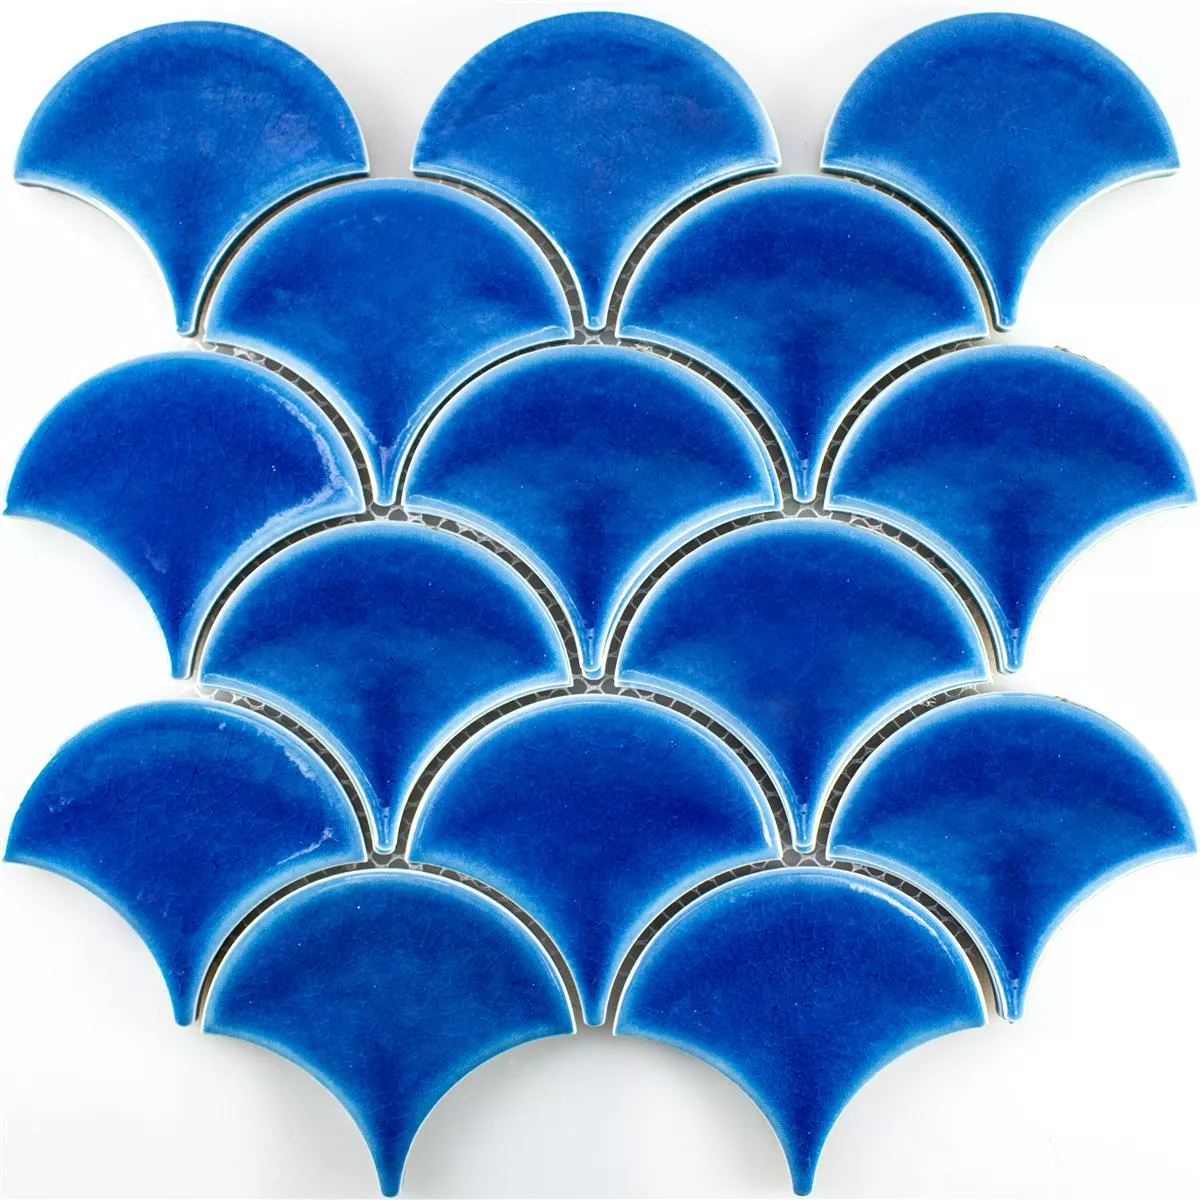 Keramik Mosaik Fliesen Newark Blau